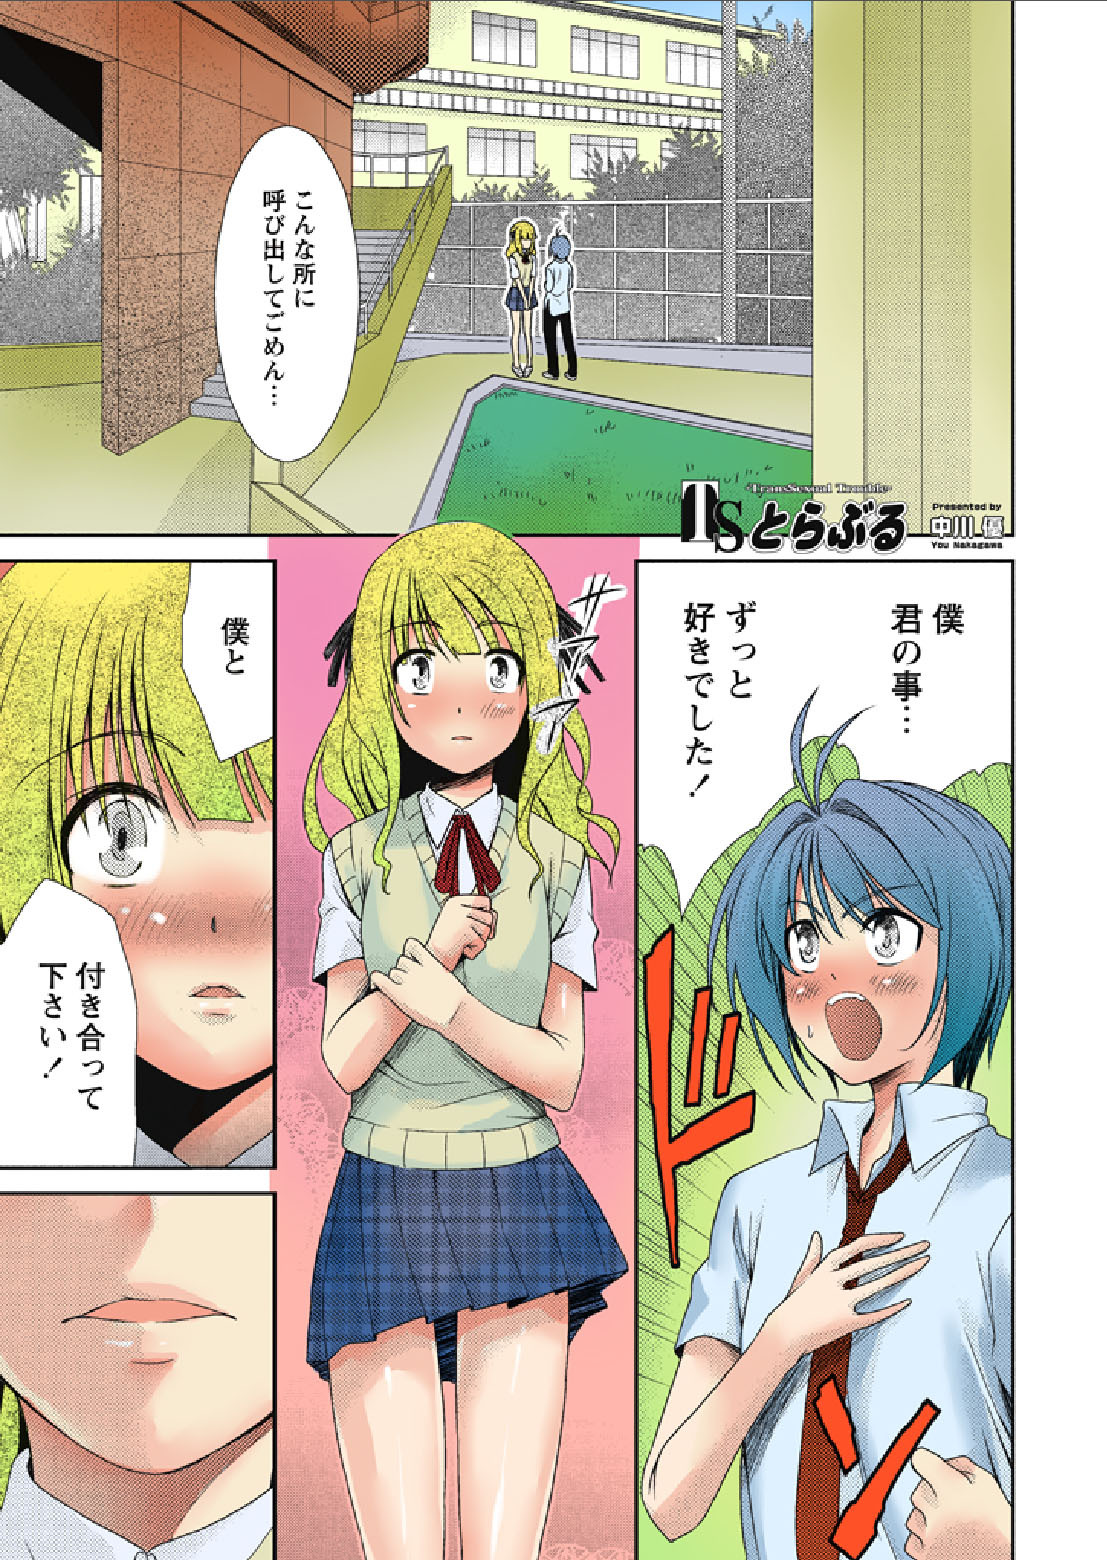 [Nakagawa You] TS Trouble page 1 full